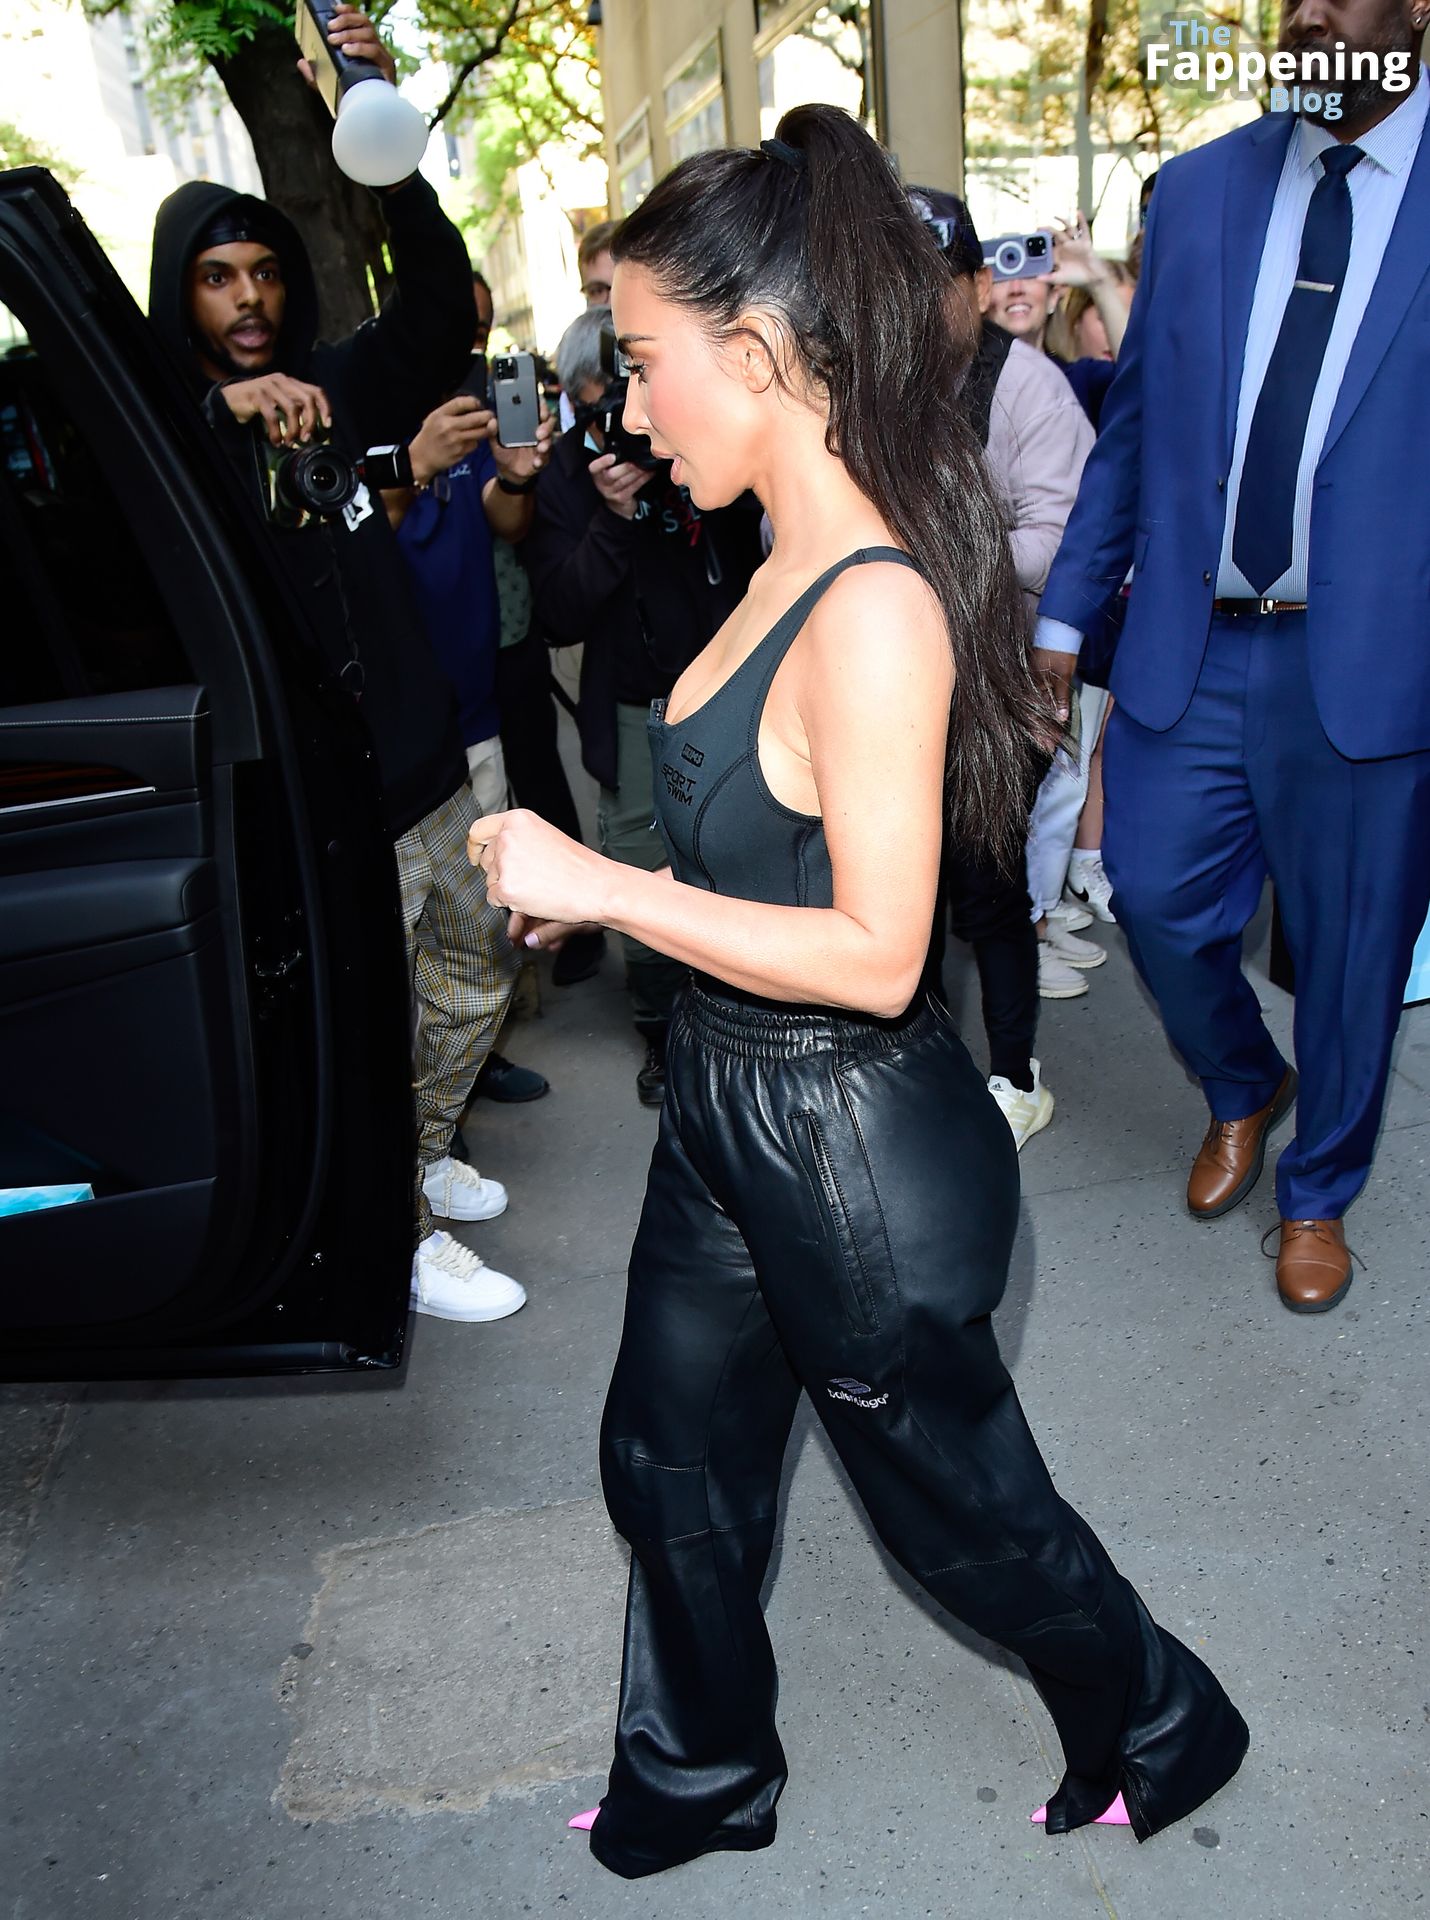 Kim-Kardashian-Sexy-The-Fappening-Blog-118-1.jpg